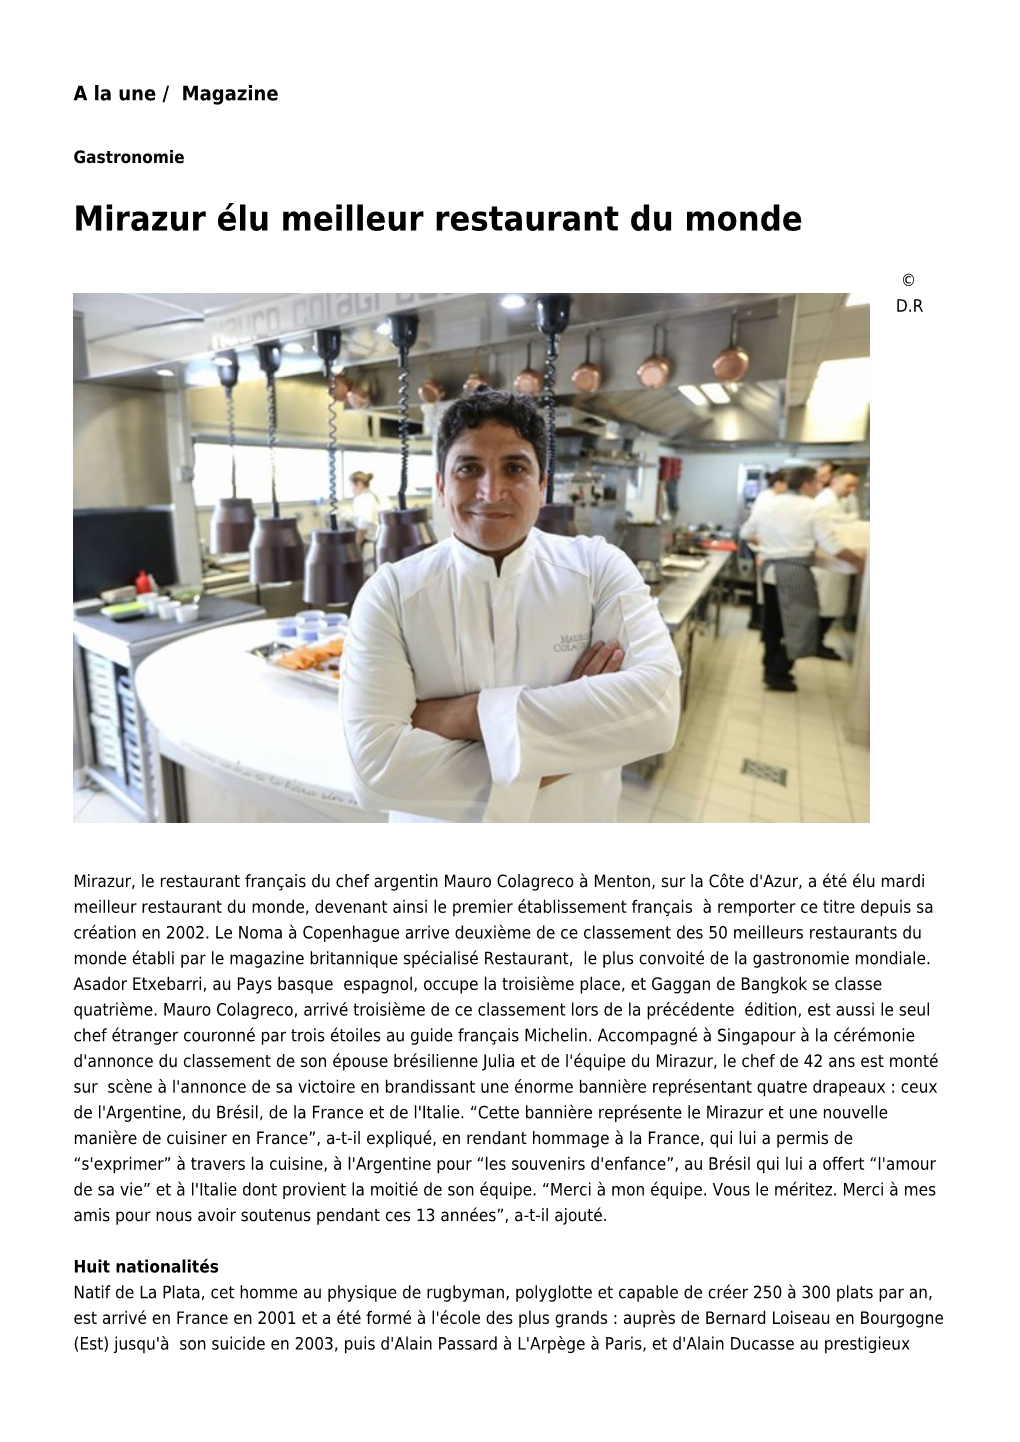 Mirazur Élu Meilleur Restaurant Du Monde